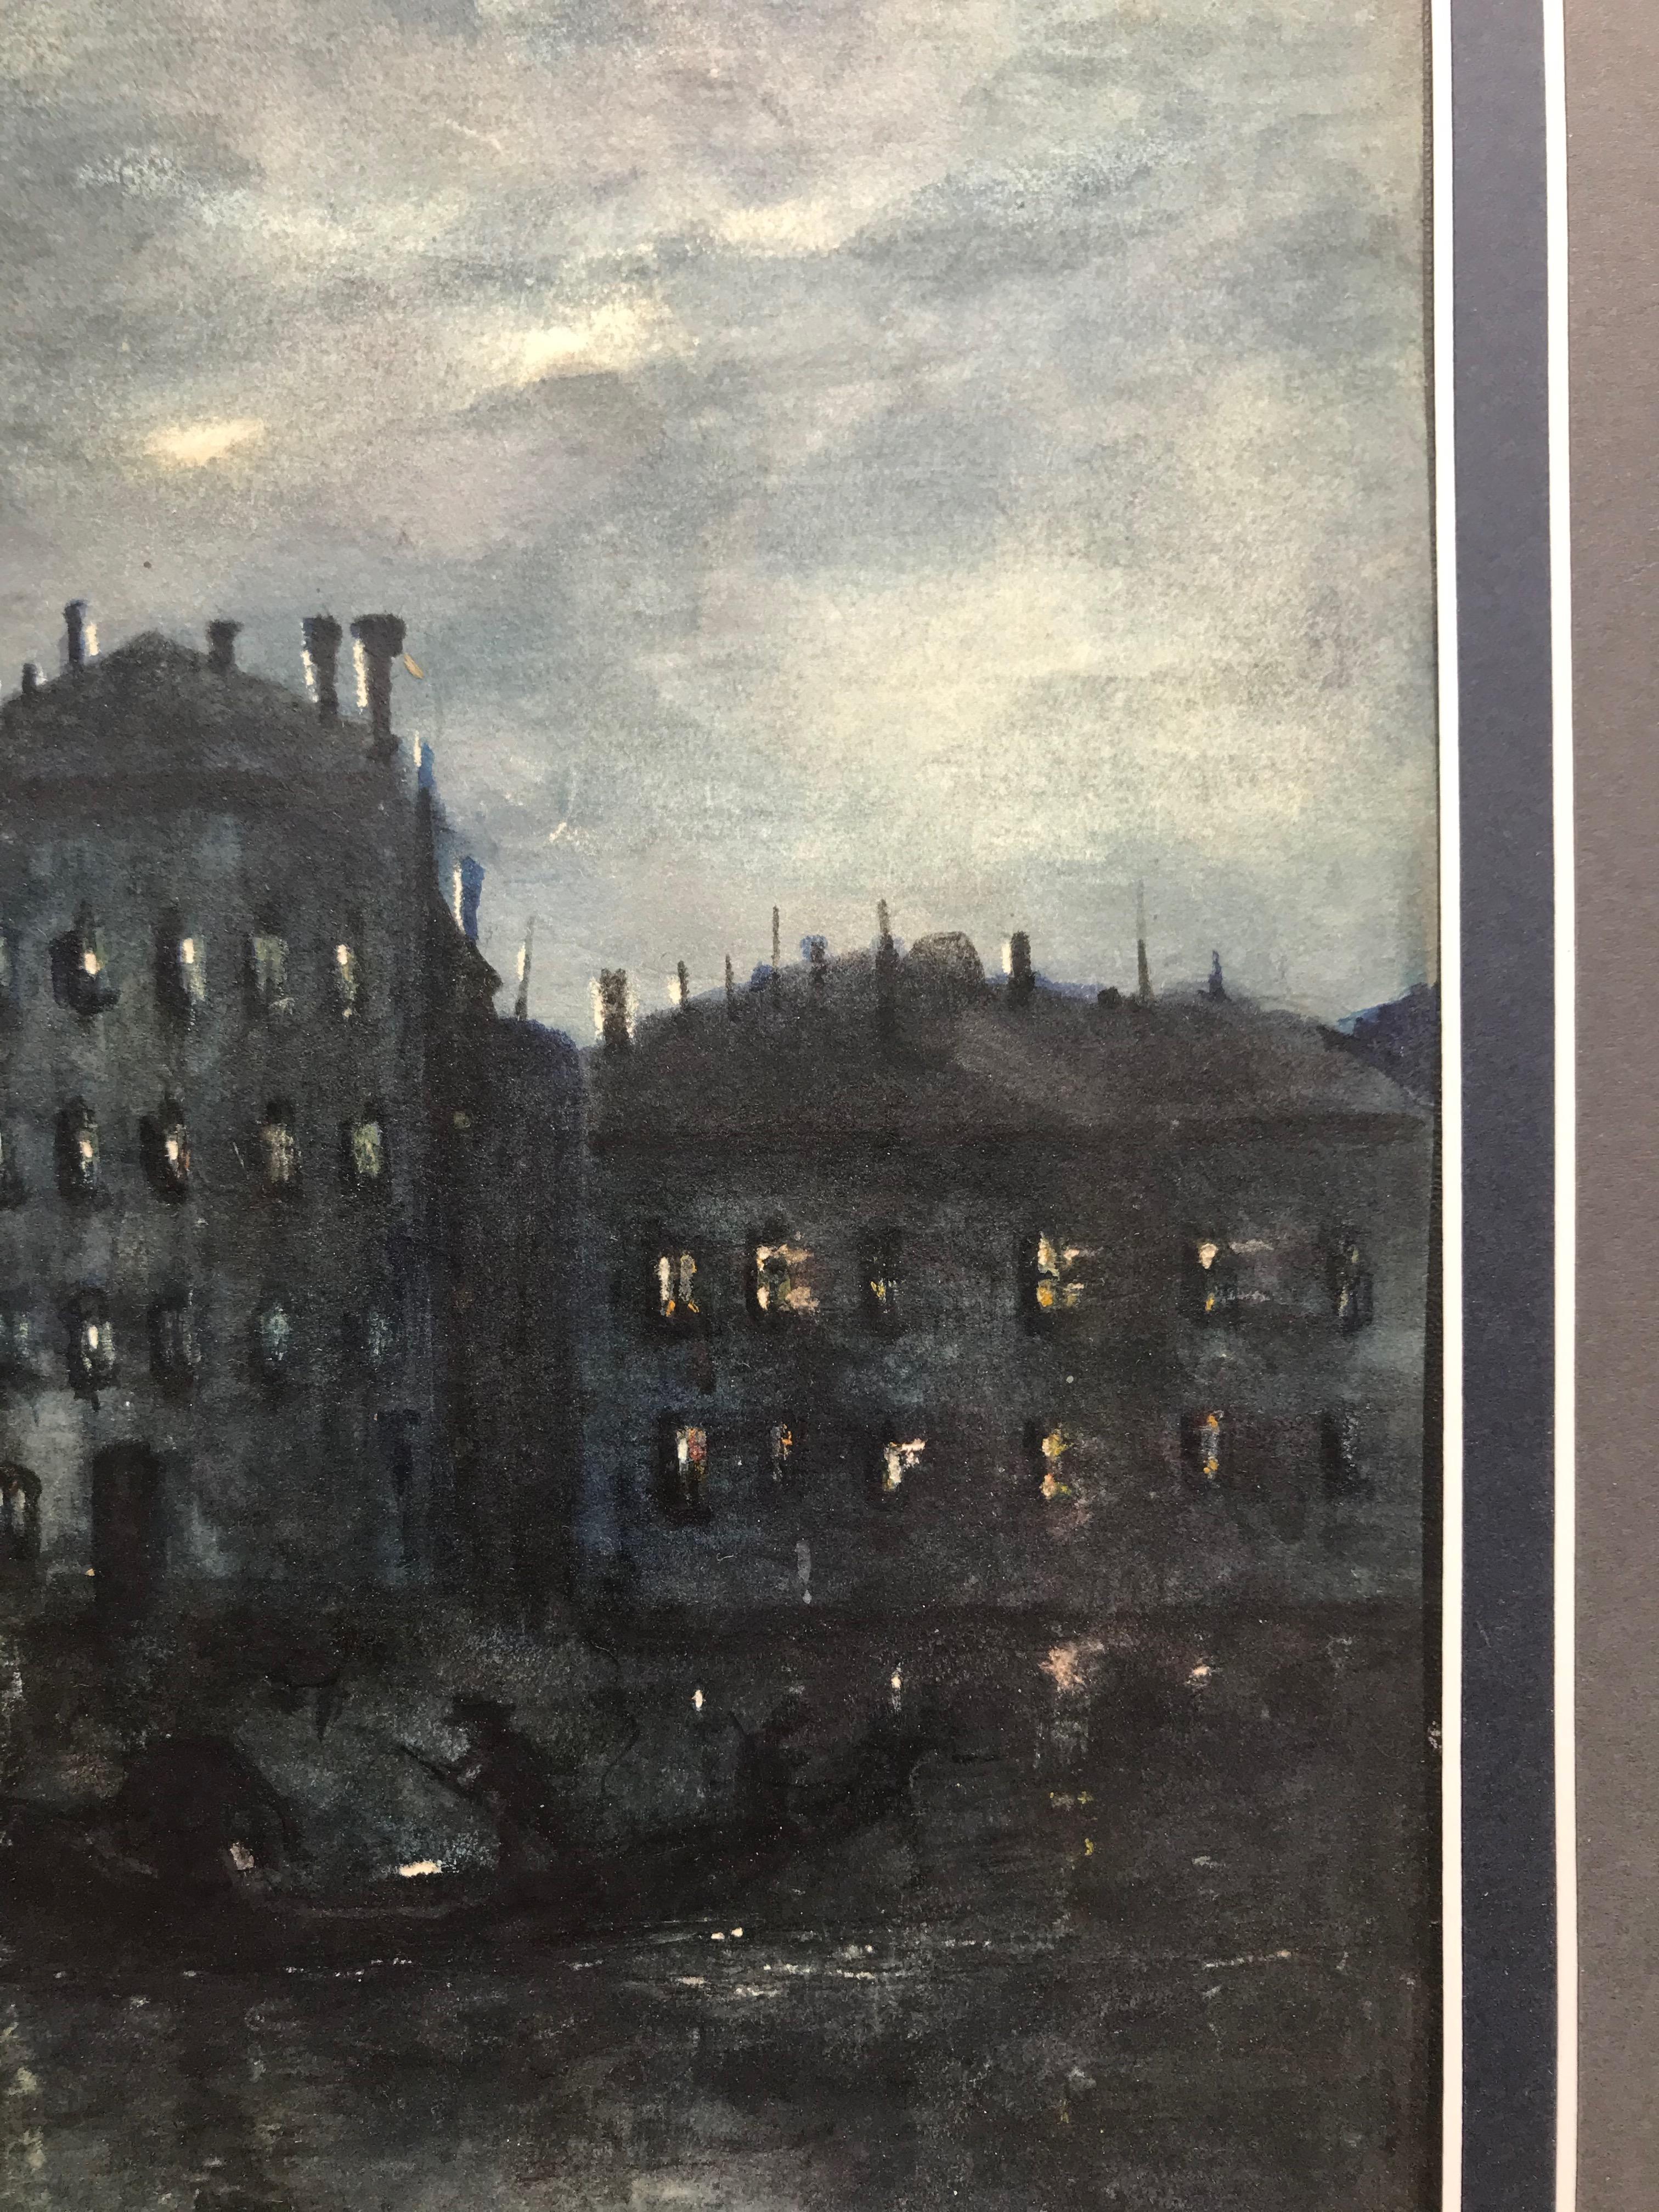 Gunner Mears, The Grand Canal, Venice, First World War interest, Outsider Art 1